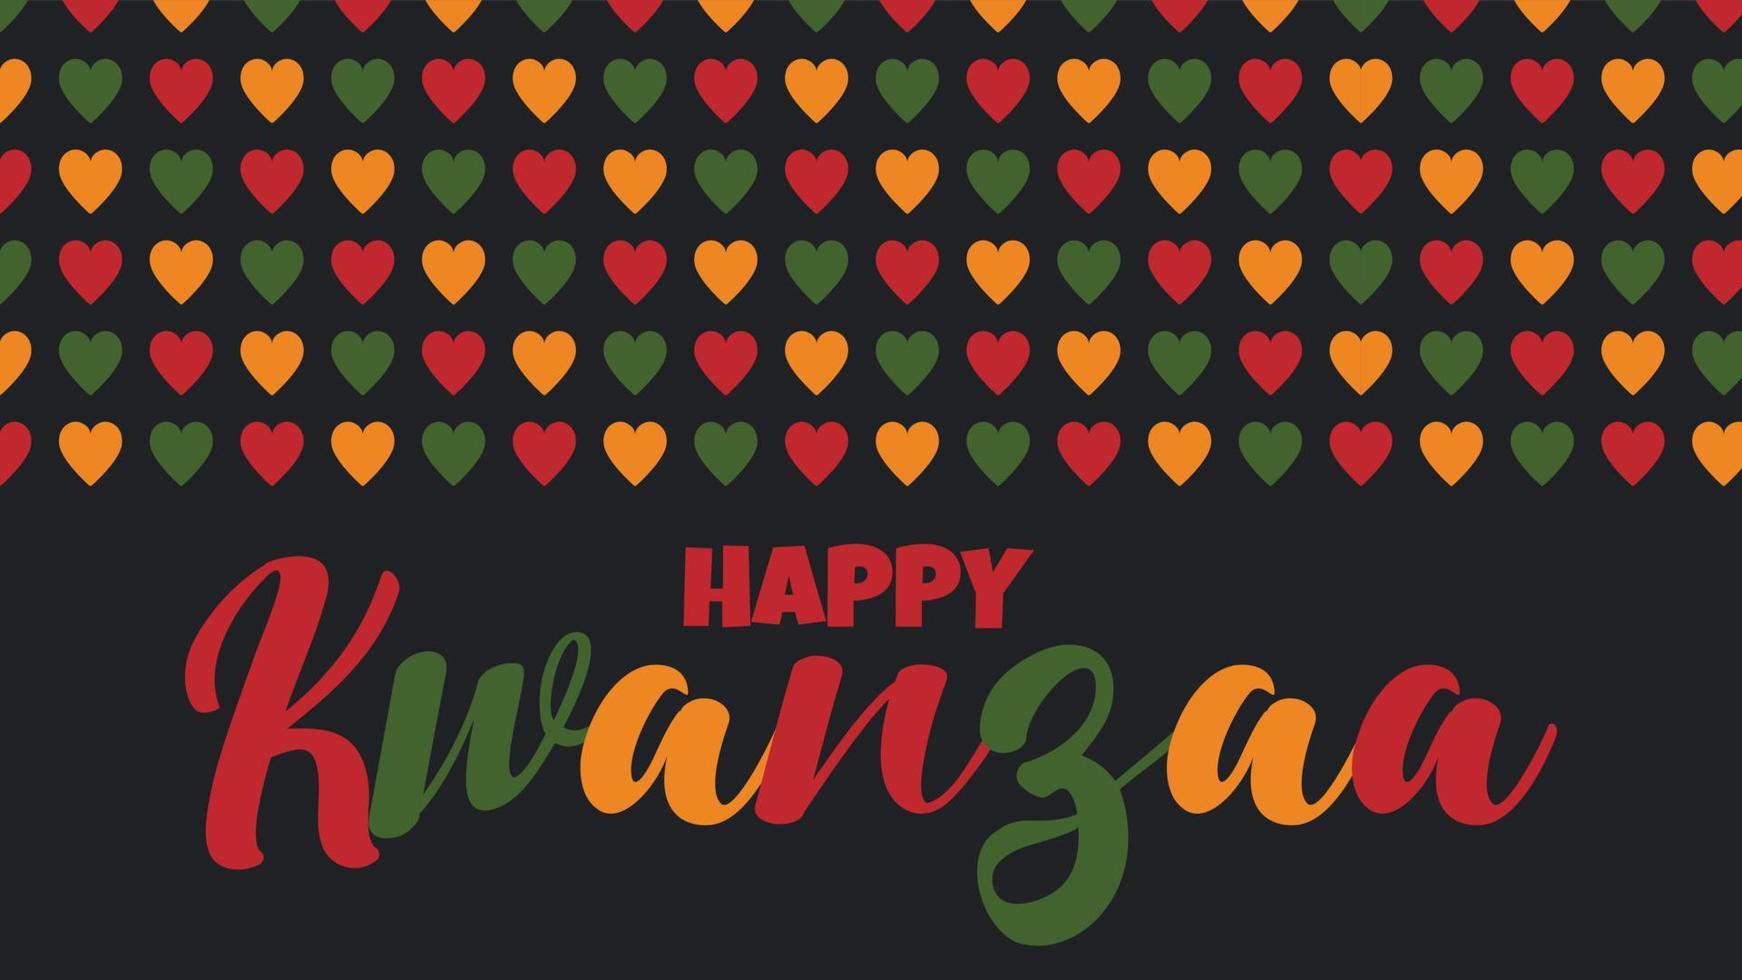 bannière heureuse de kwanzaa - célébration afro-américaine aux états-unis. illustration vectorielle avec texte, motif de bordure avec coeurs aux couleurs traditionnelles africaines - vert, rouge, jaune sur noir. carte de voeux vecteur